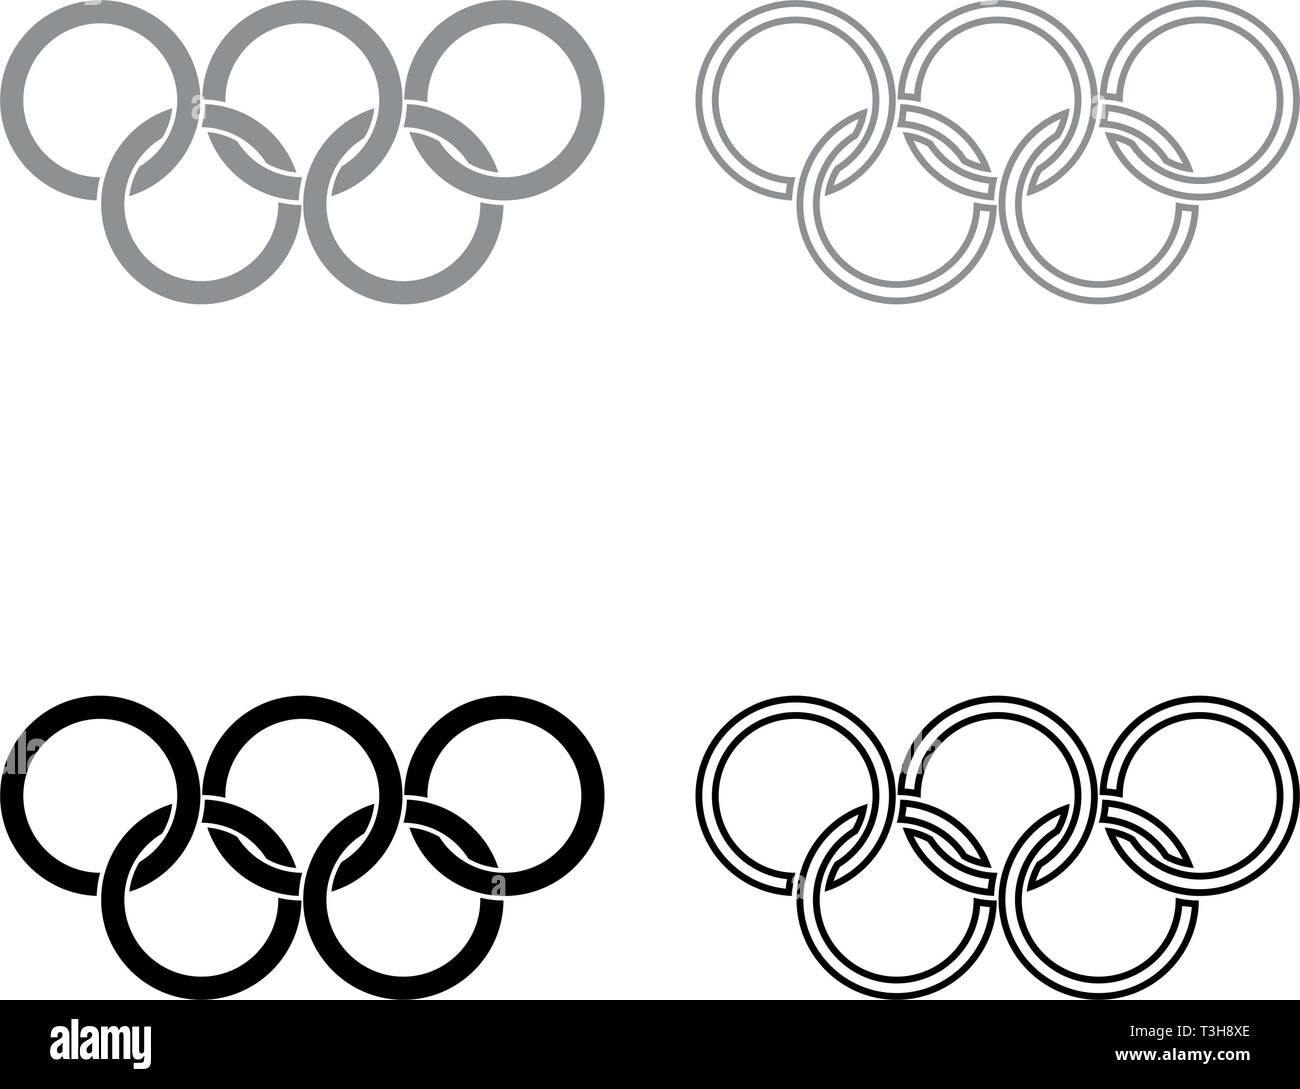 Olympische Ringe fünf Olympischen Ringe Icon Set schwarz Grau Farbe  Vektor-illustration Flat Style simple Image Stock-Vektorgrafik - Alamy